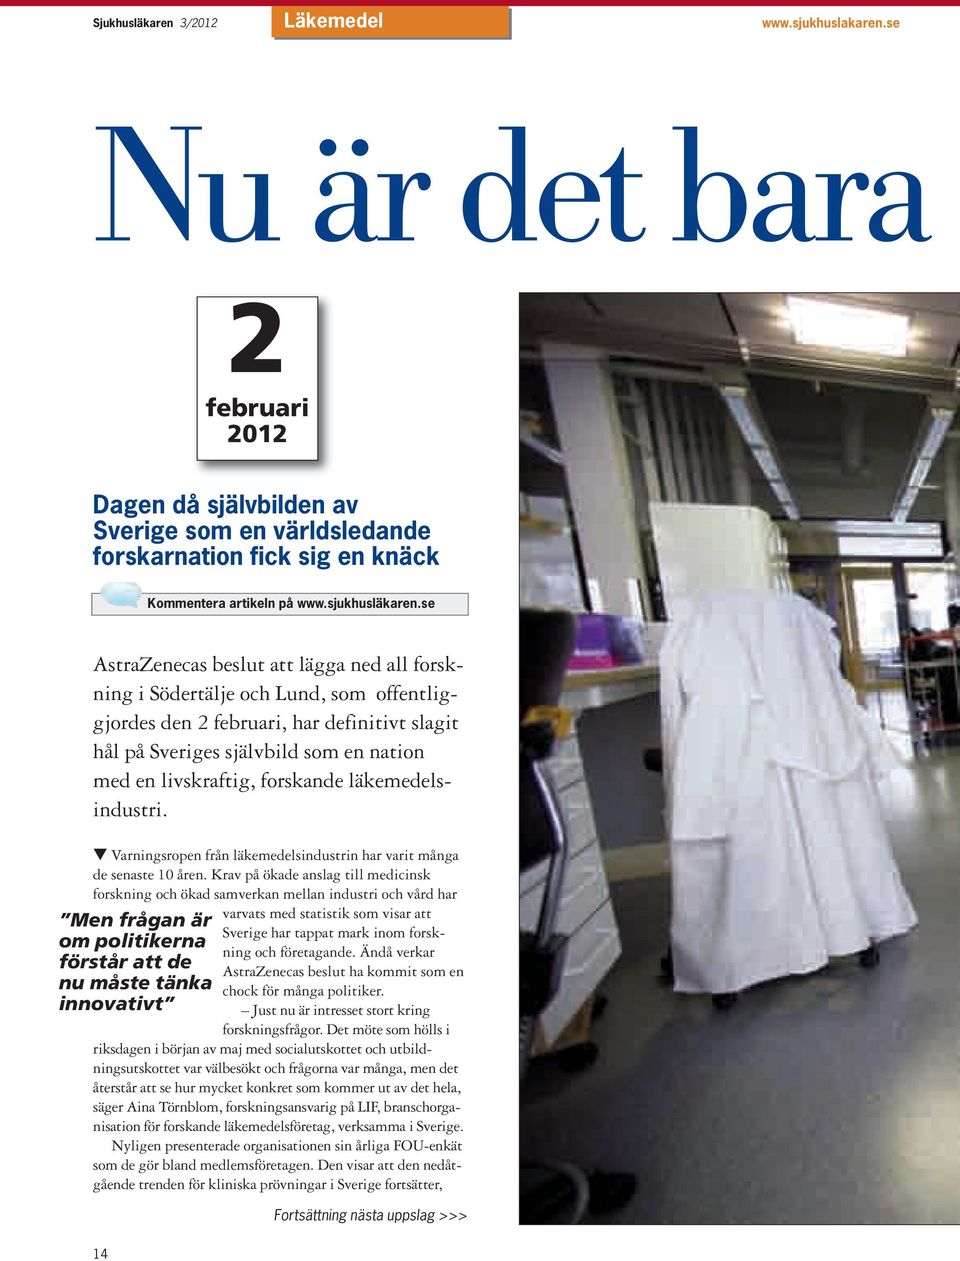 se AstraZenecas beslut att lägga ned all forskning i Södertälje och Lund, som offentliggjordes den 2 februari, har definitivt slagit hål på Sveriges självbild som en nation med en livskraftig,